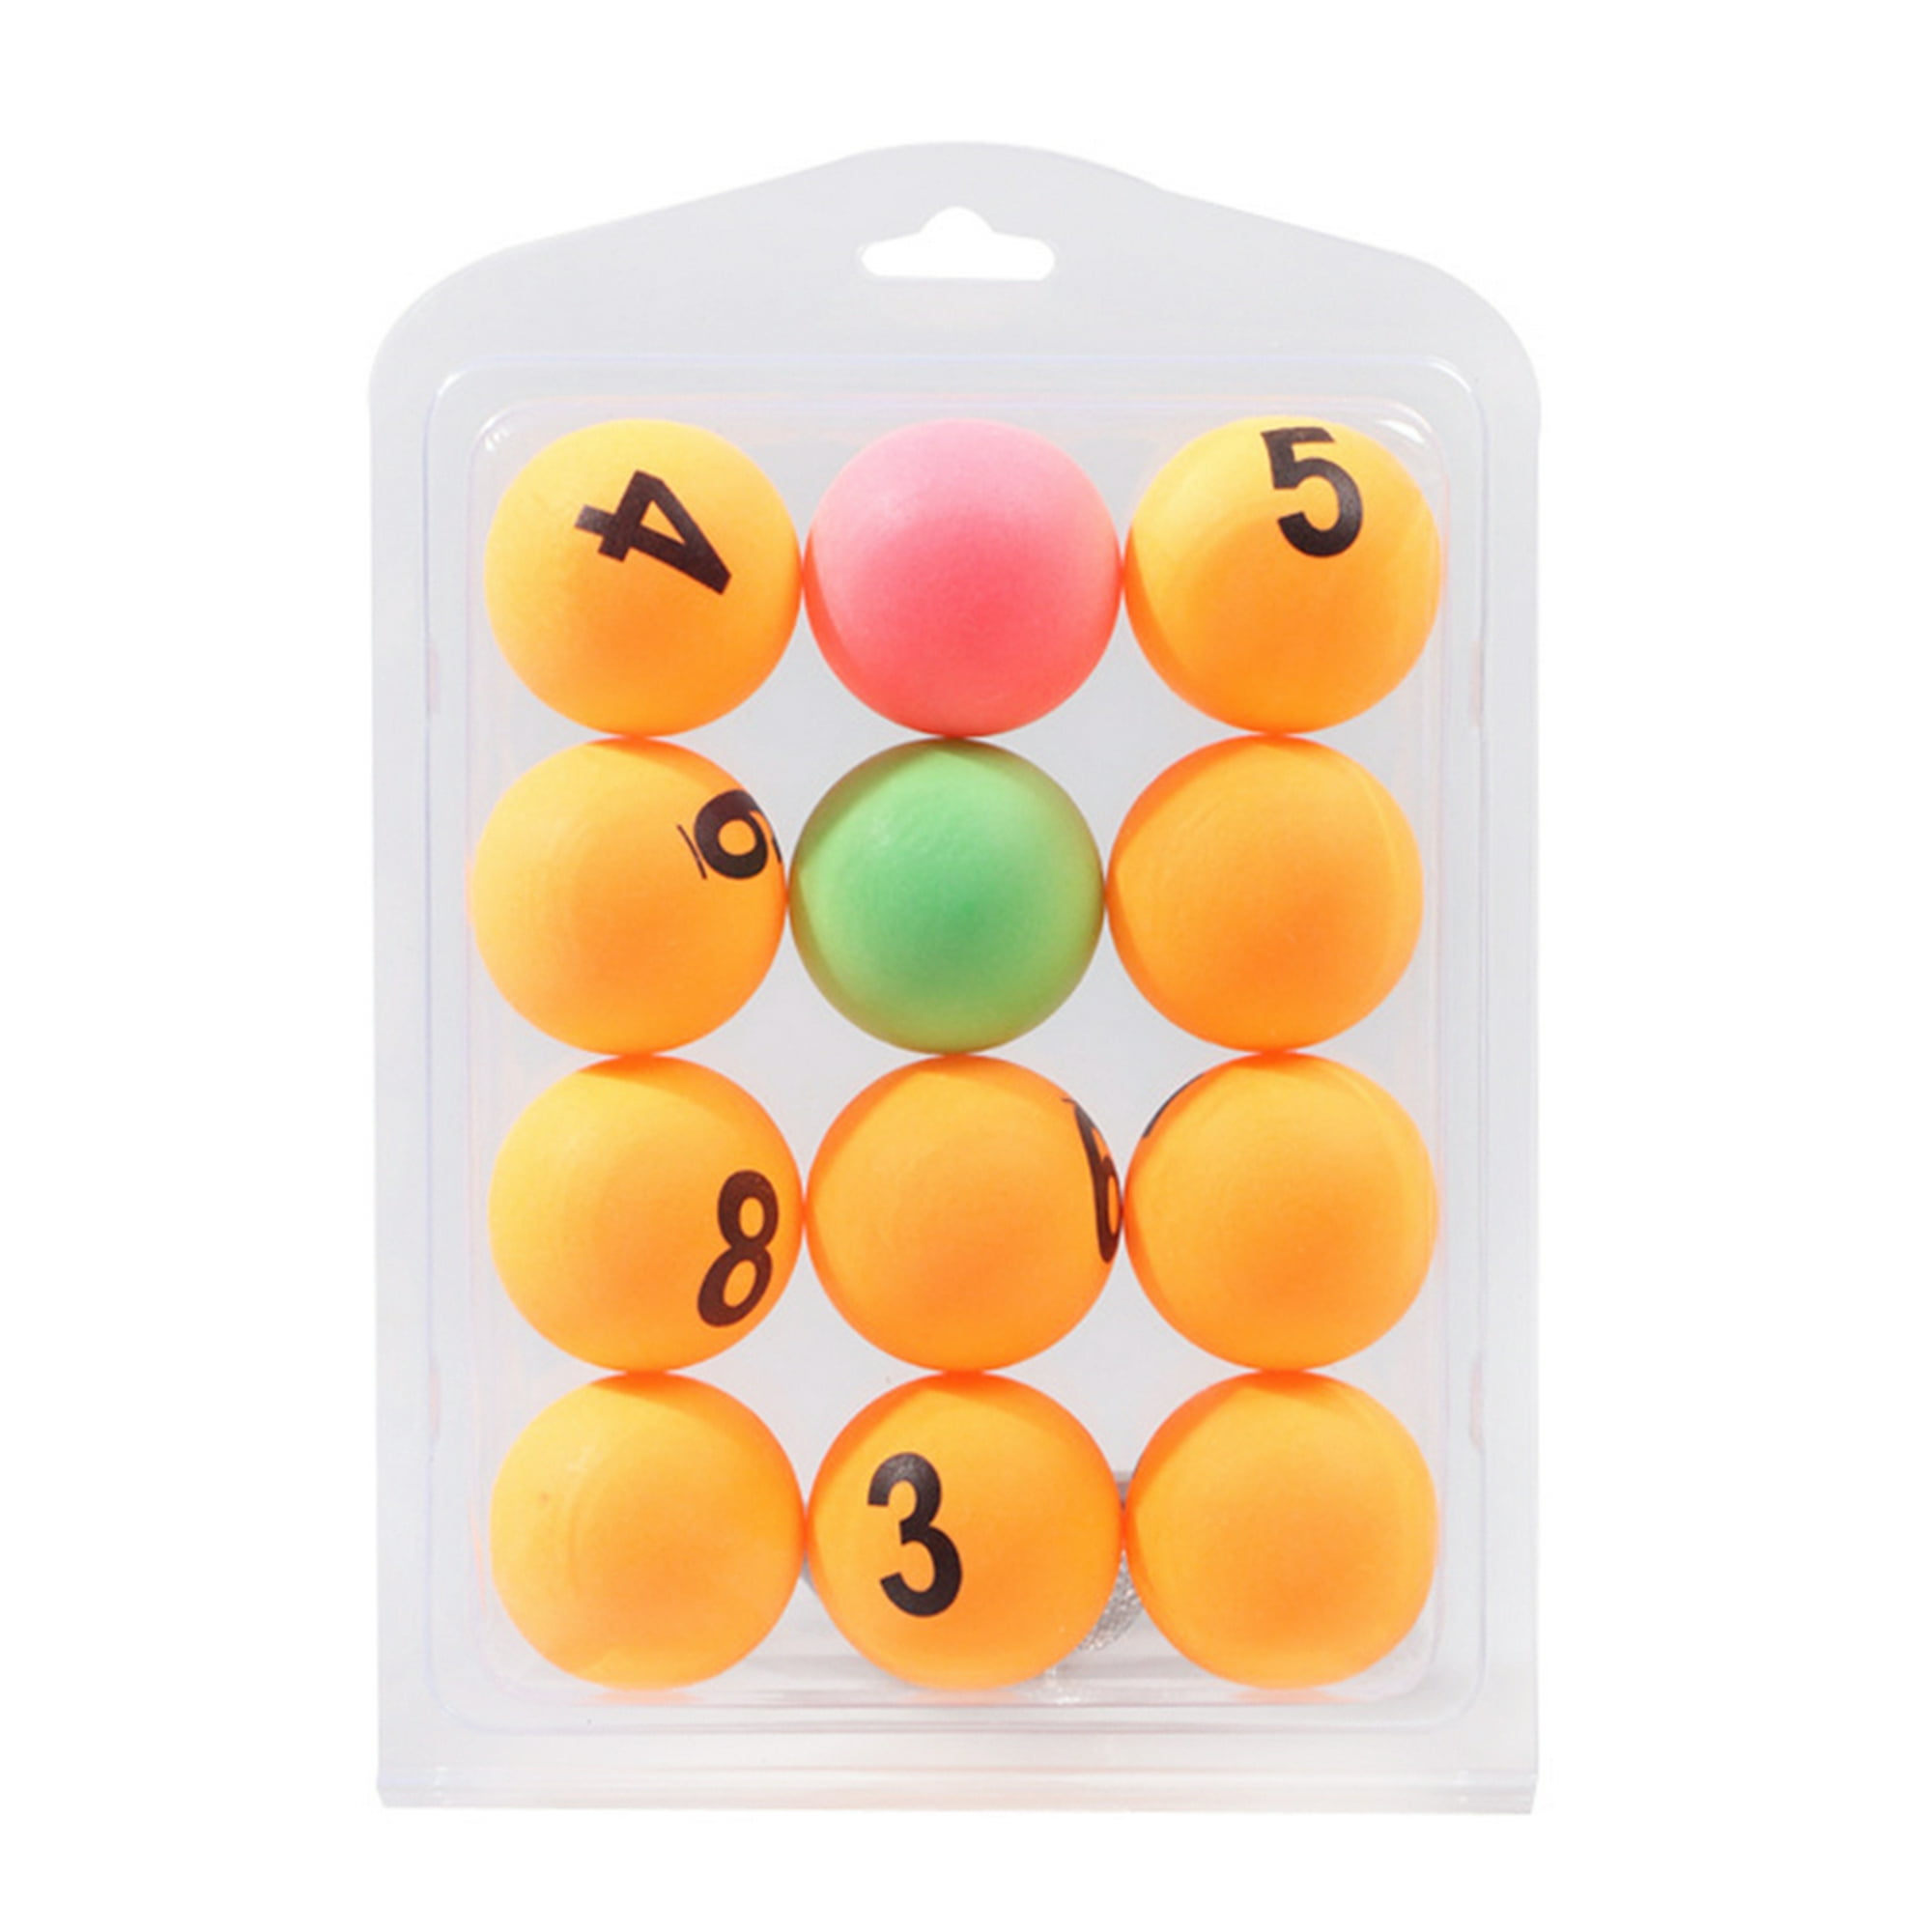 12 bolas de ping pong pelota de tenis de mesa de 16in bolas de plástico de  colores para decoración de fiestas actividades de aprendizaje clase – Yaxa  Costa Rica